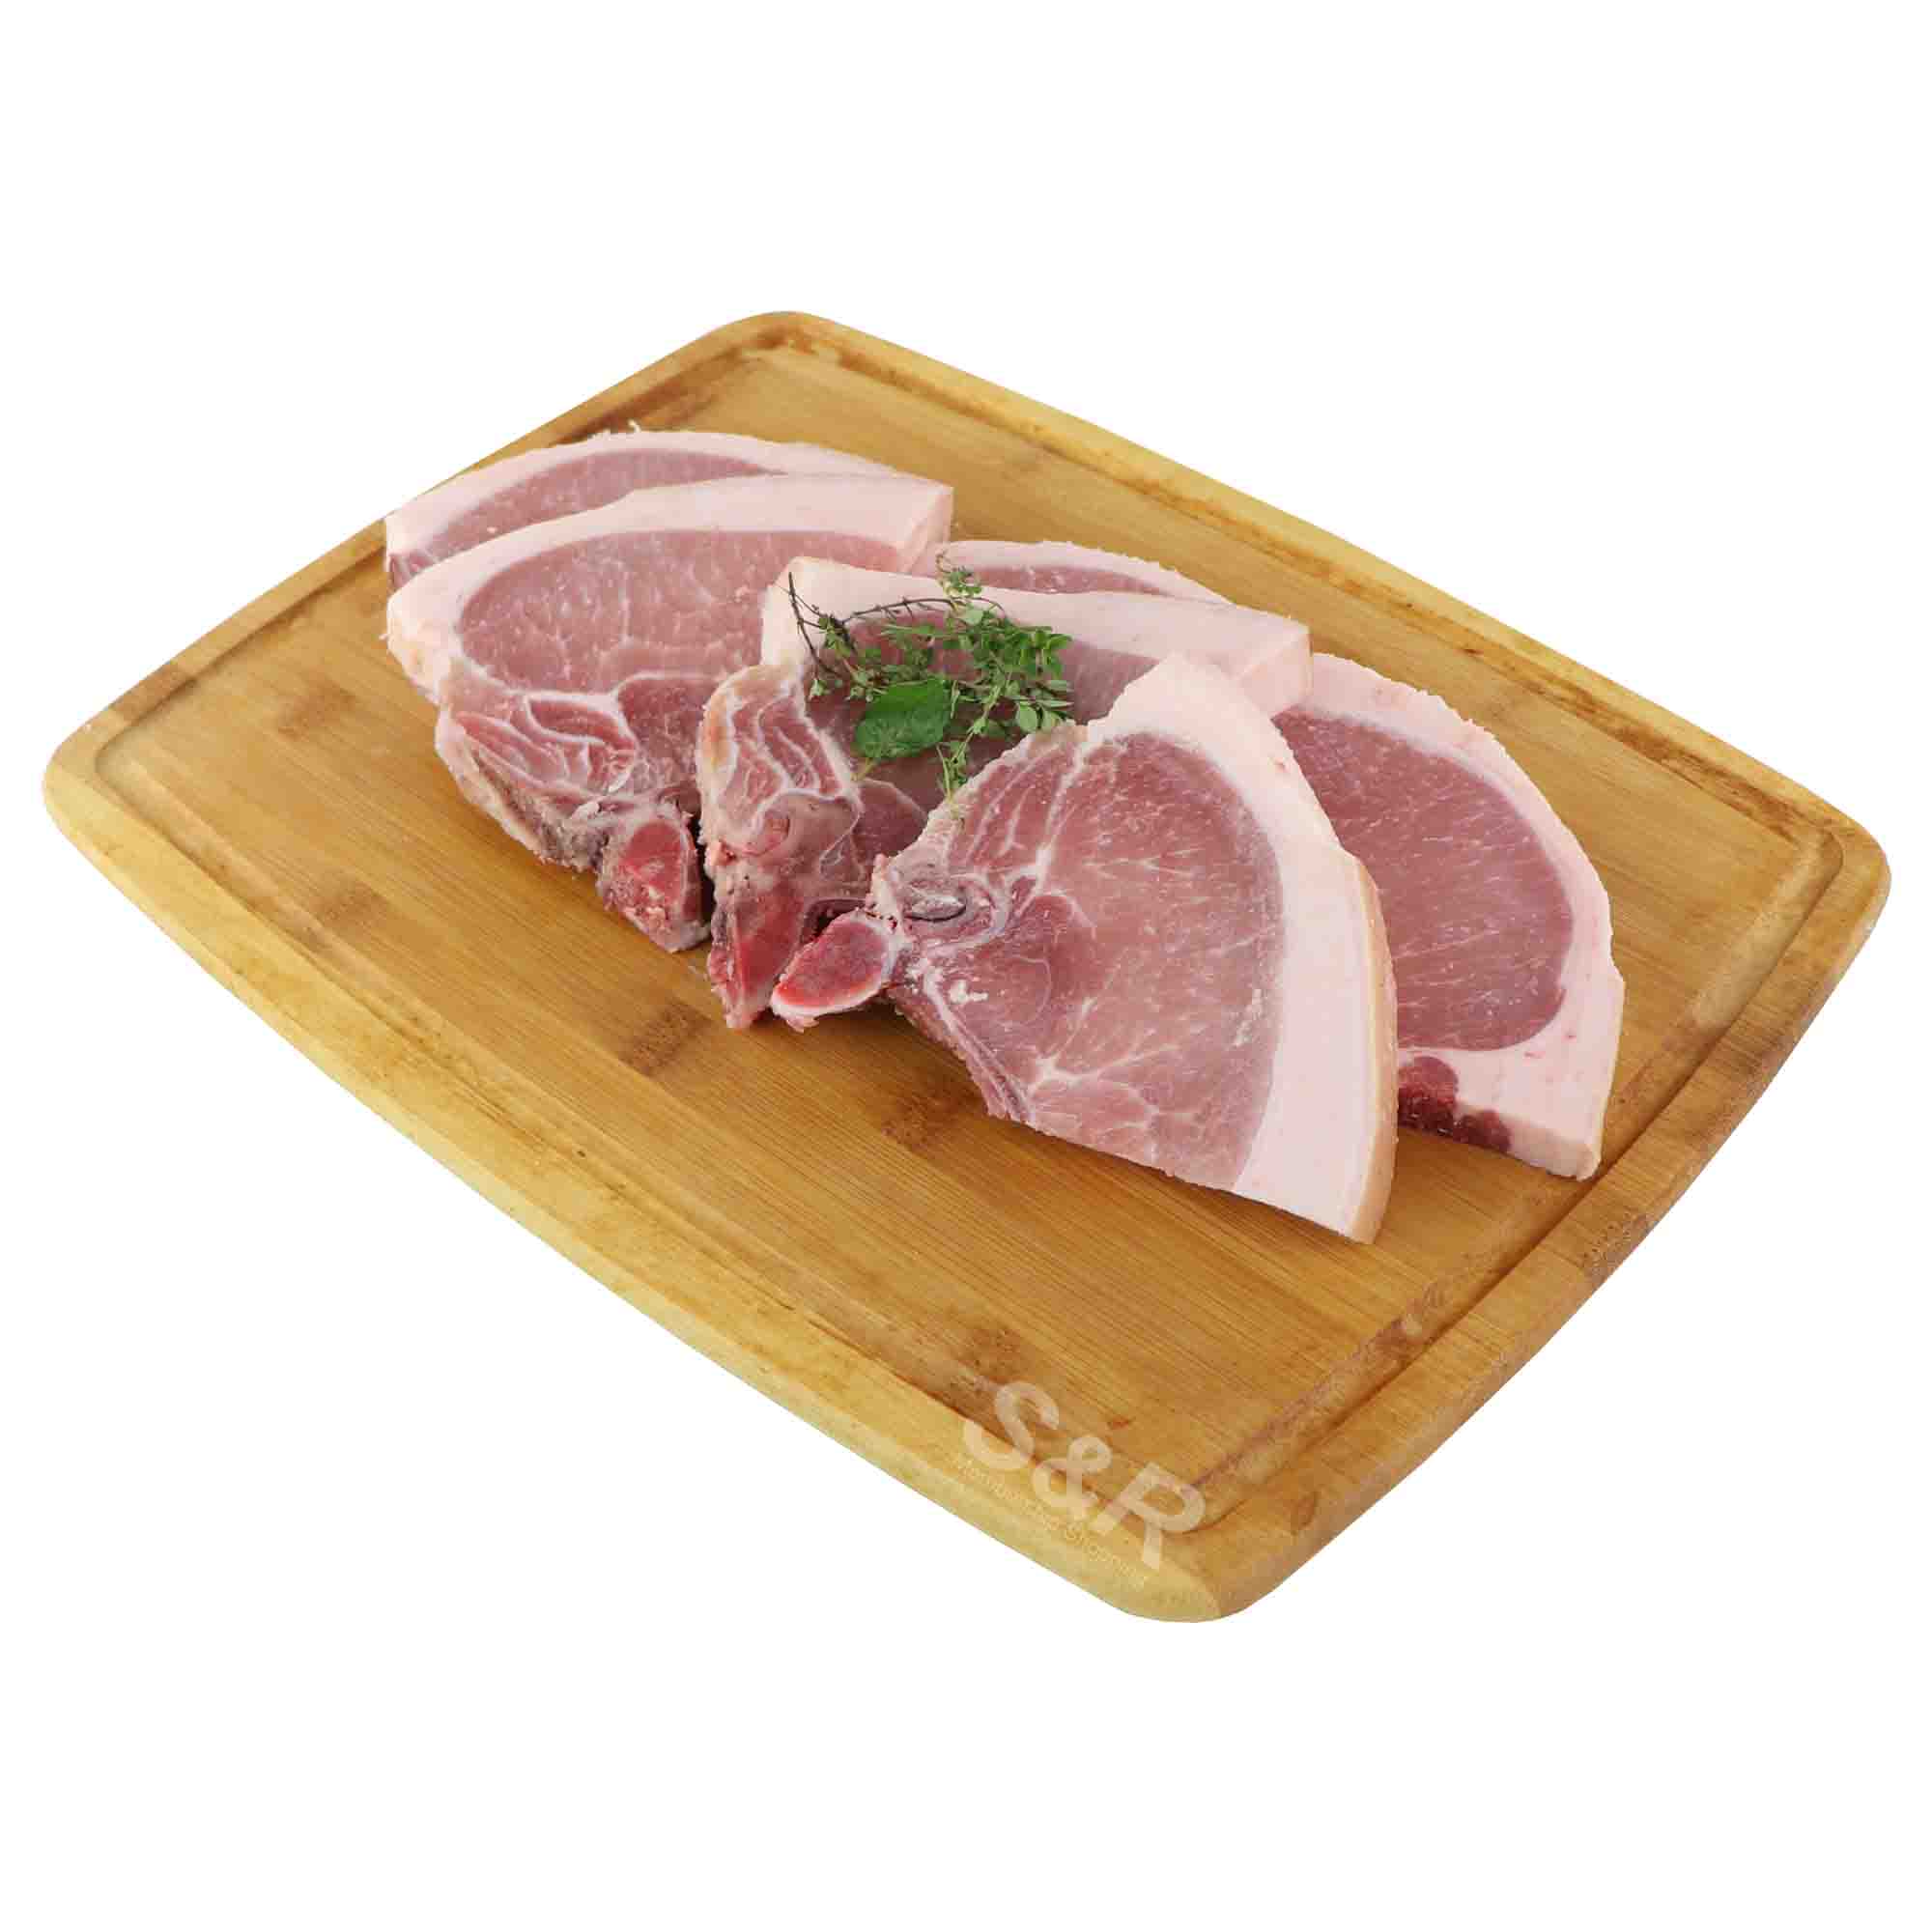 Members' Value Pork Chop Skin-on approx. 1.7kg